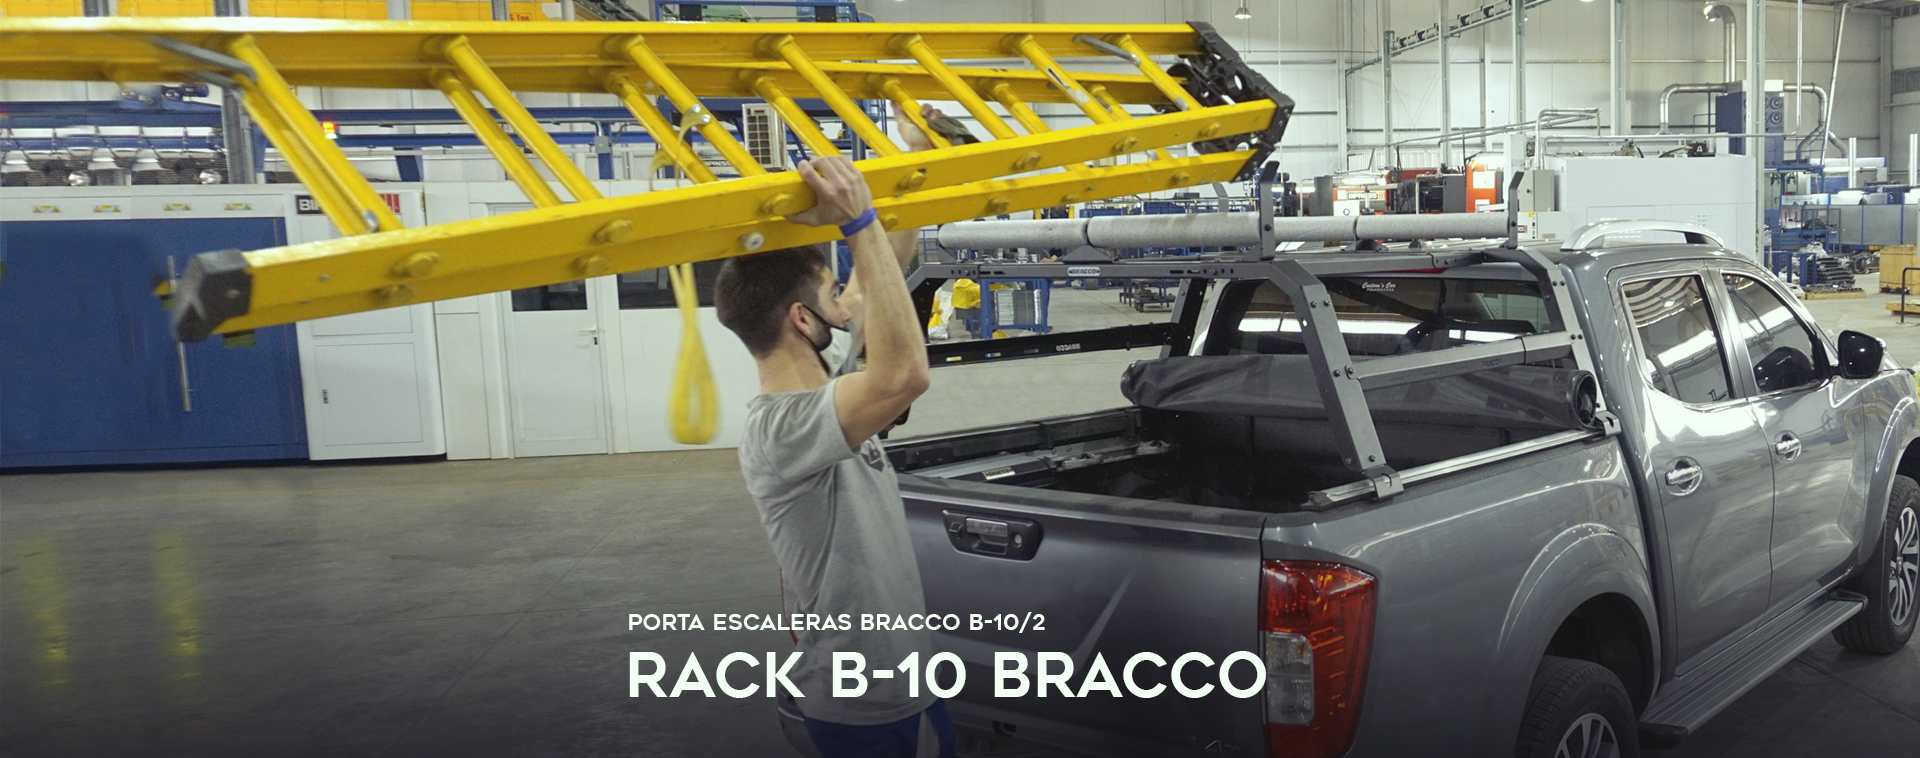 NUEVO RACK B-10 BRACCO